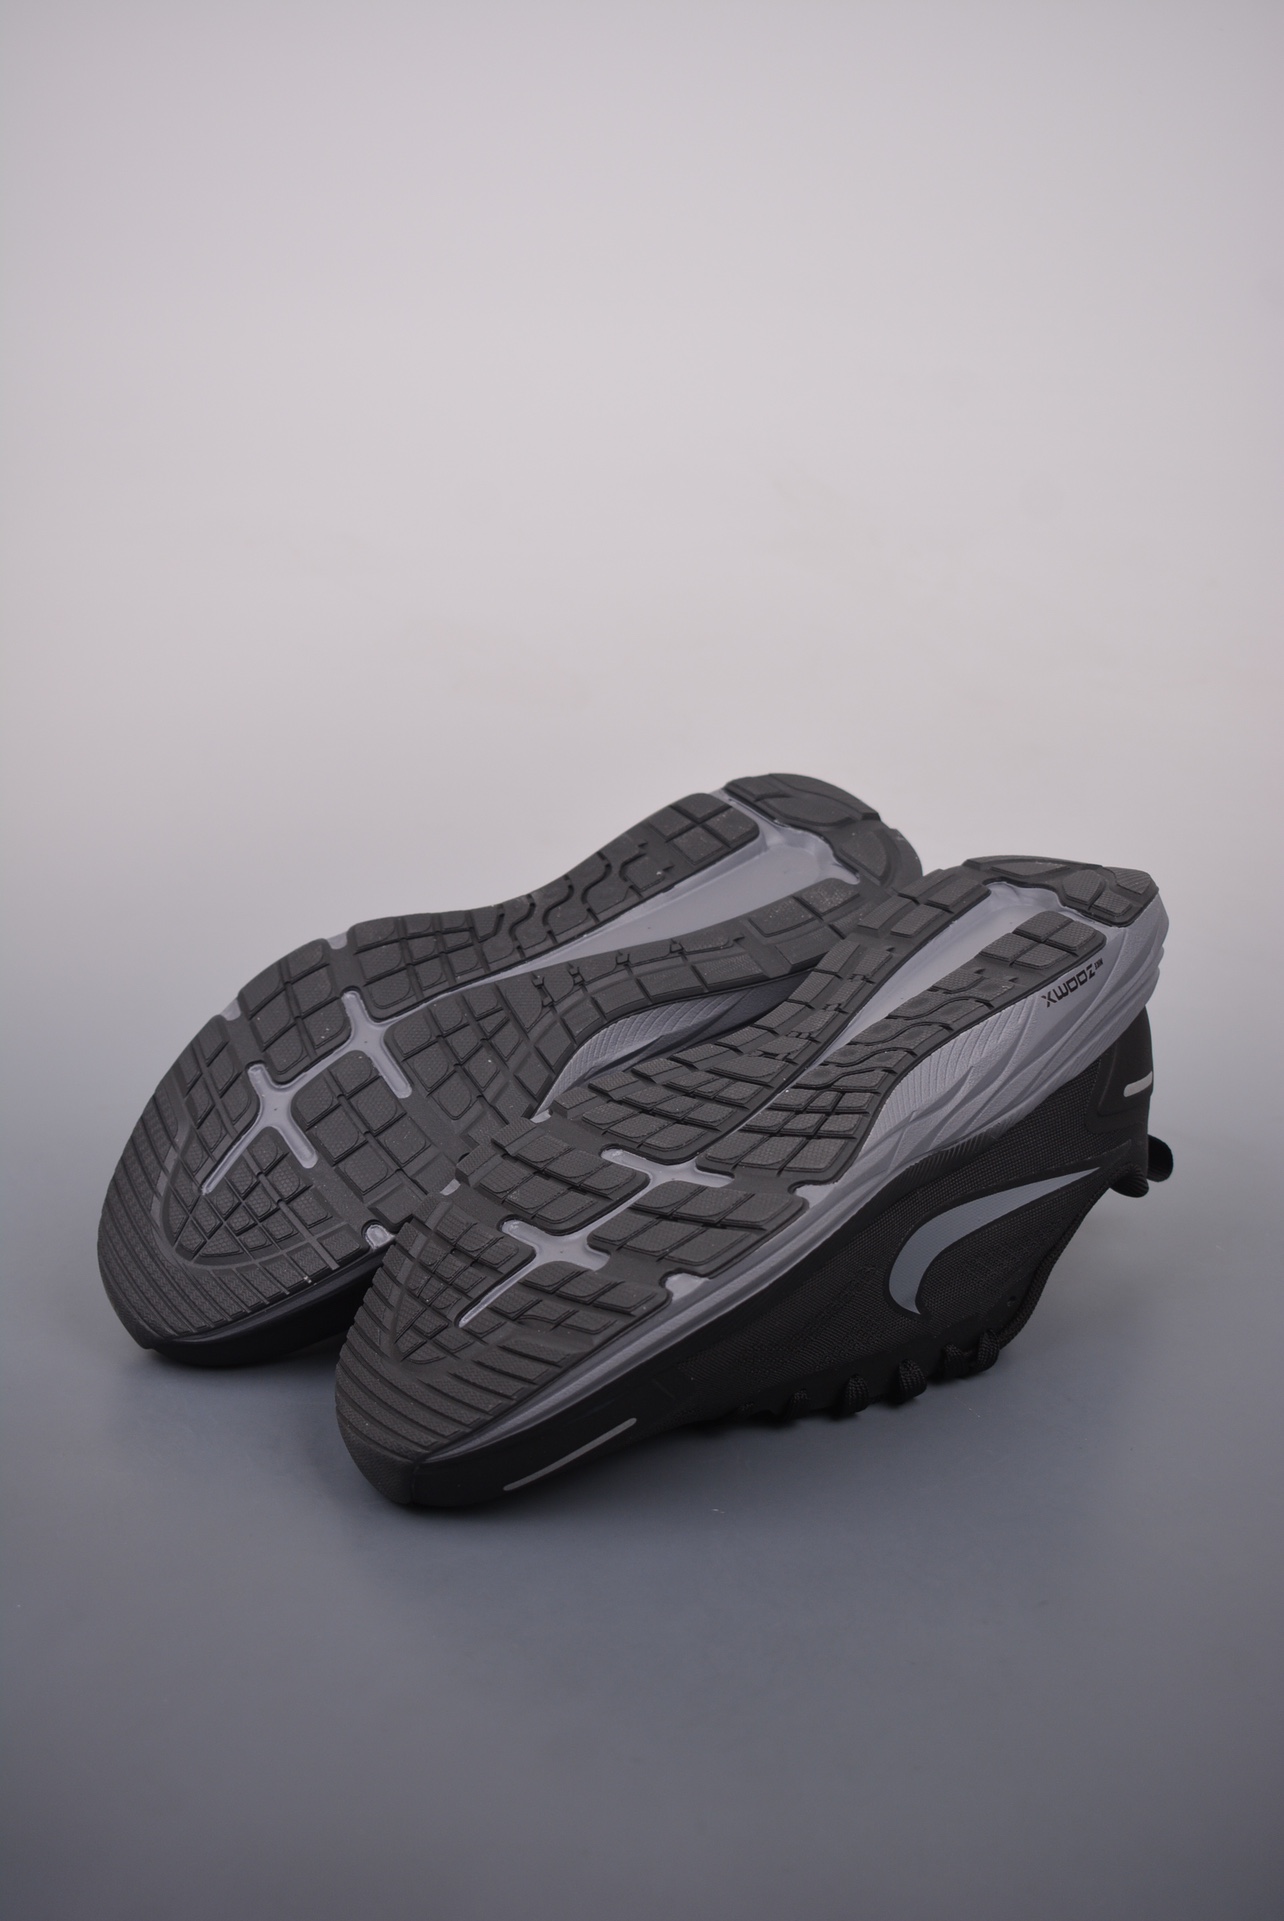 170  Zoom Winflo 9X 登月网面透气跑步鞋 CZ6720-007